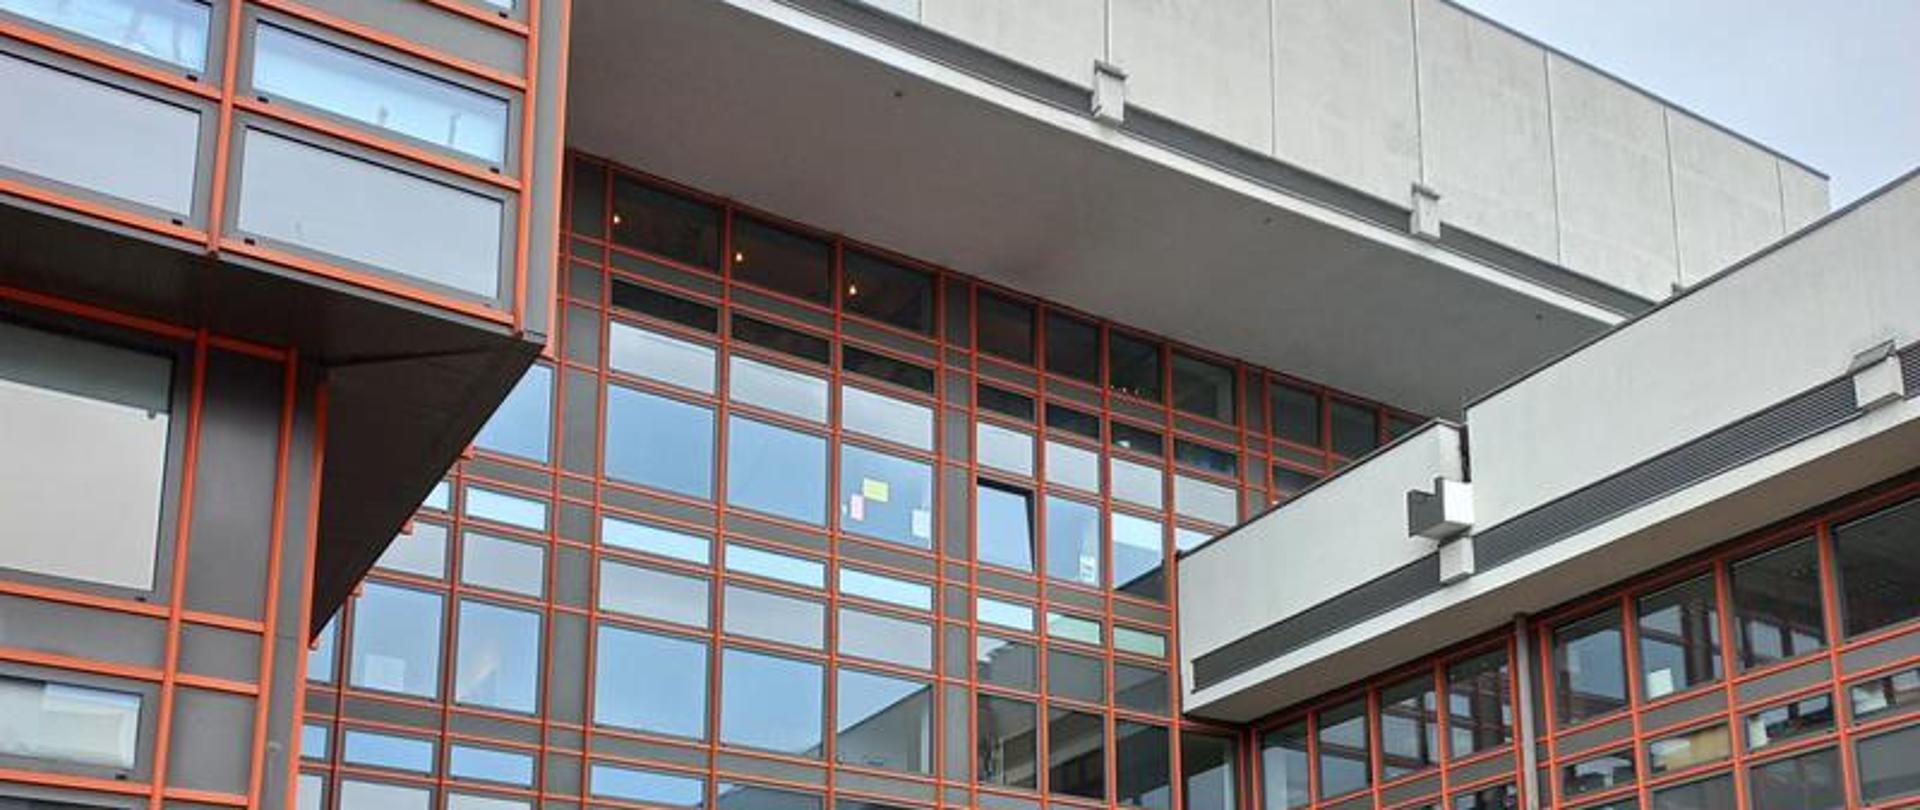 Na zdjęcie wejście do głównego budynku Akademii Sztuk Pięknych w Łodzi